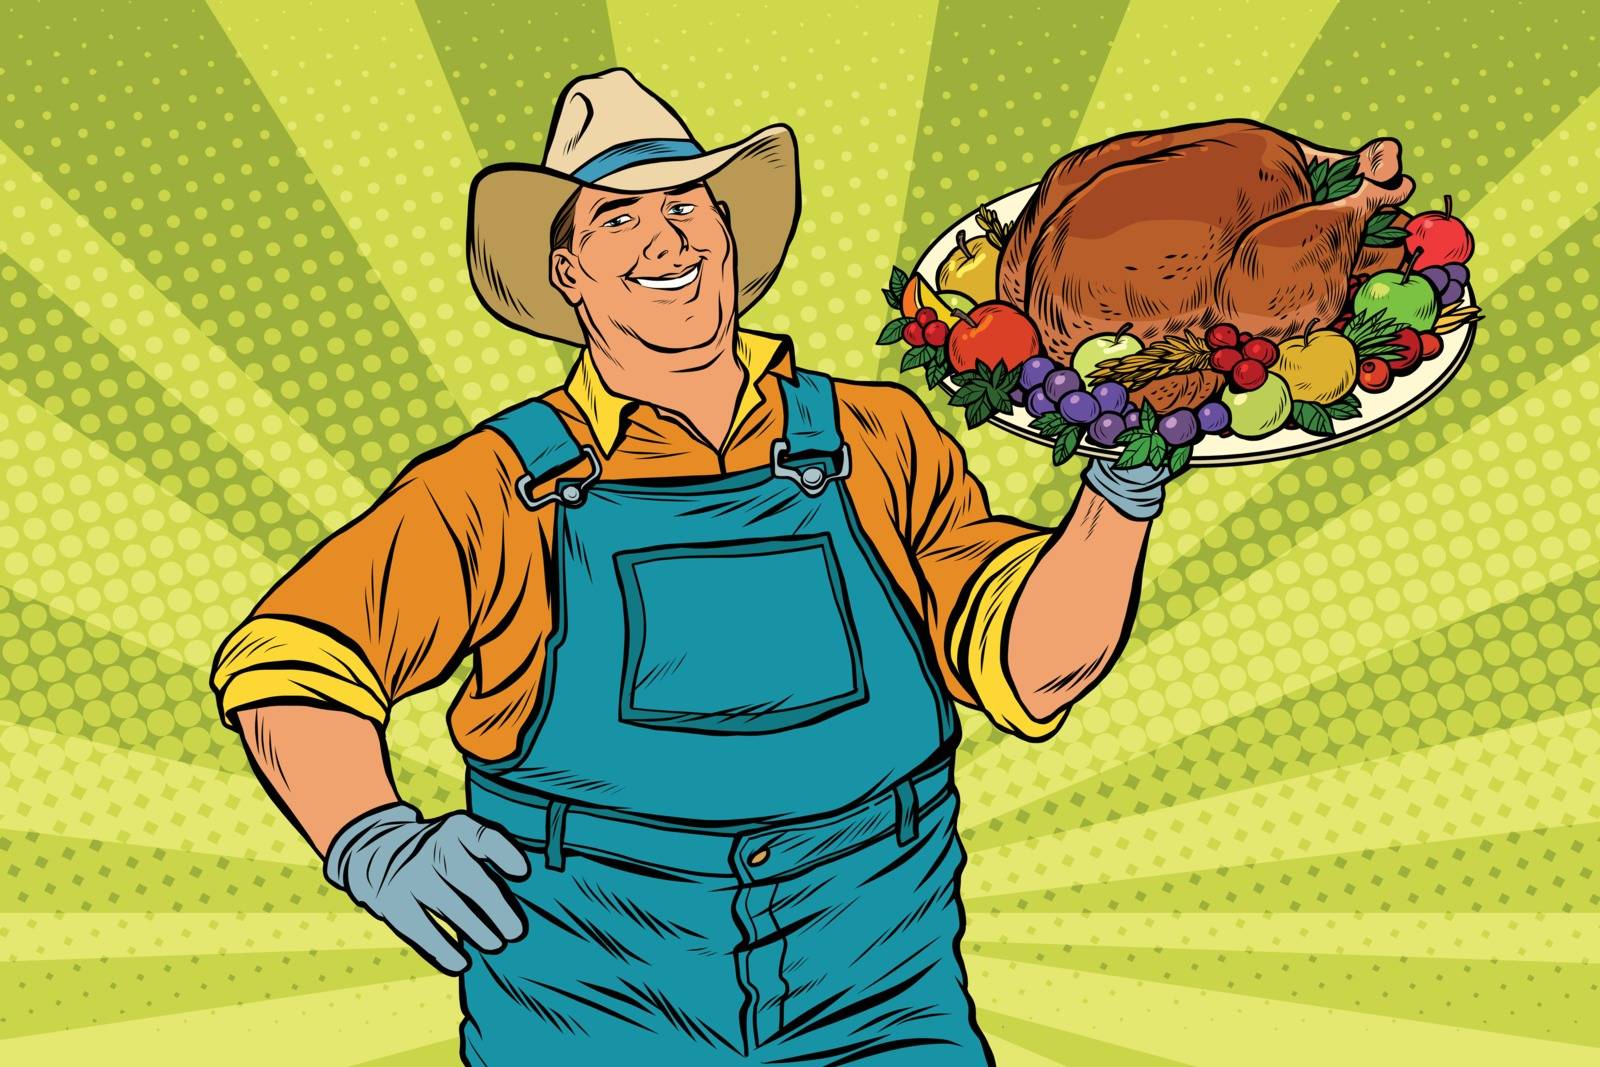 Rural farmer and roast Turkey, pop art retro vector illustration. Family dinner for Christmas or Thanksgiving